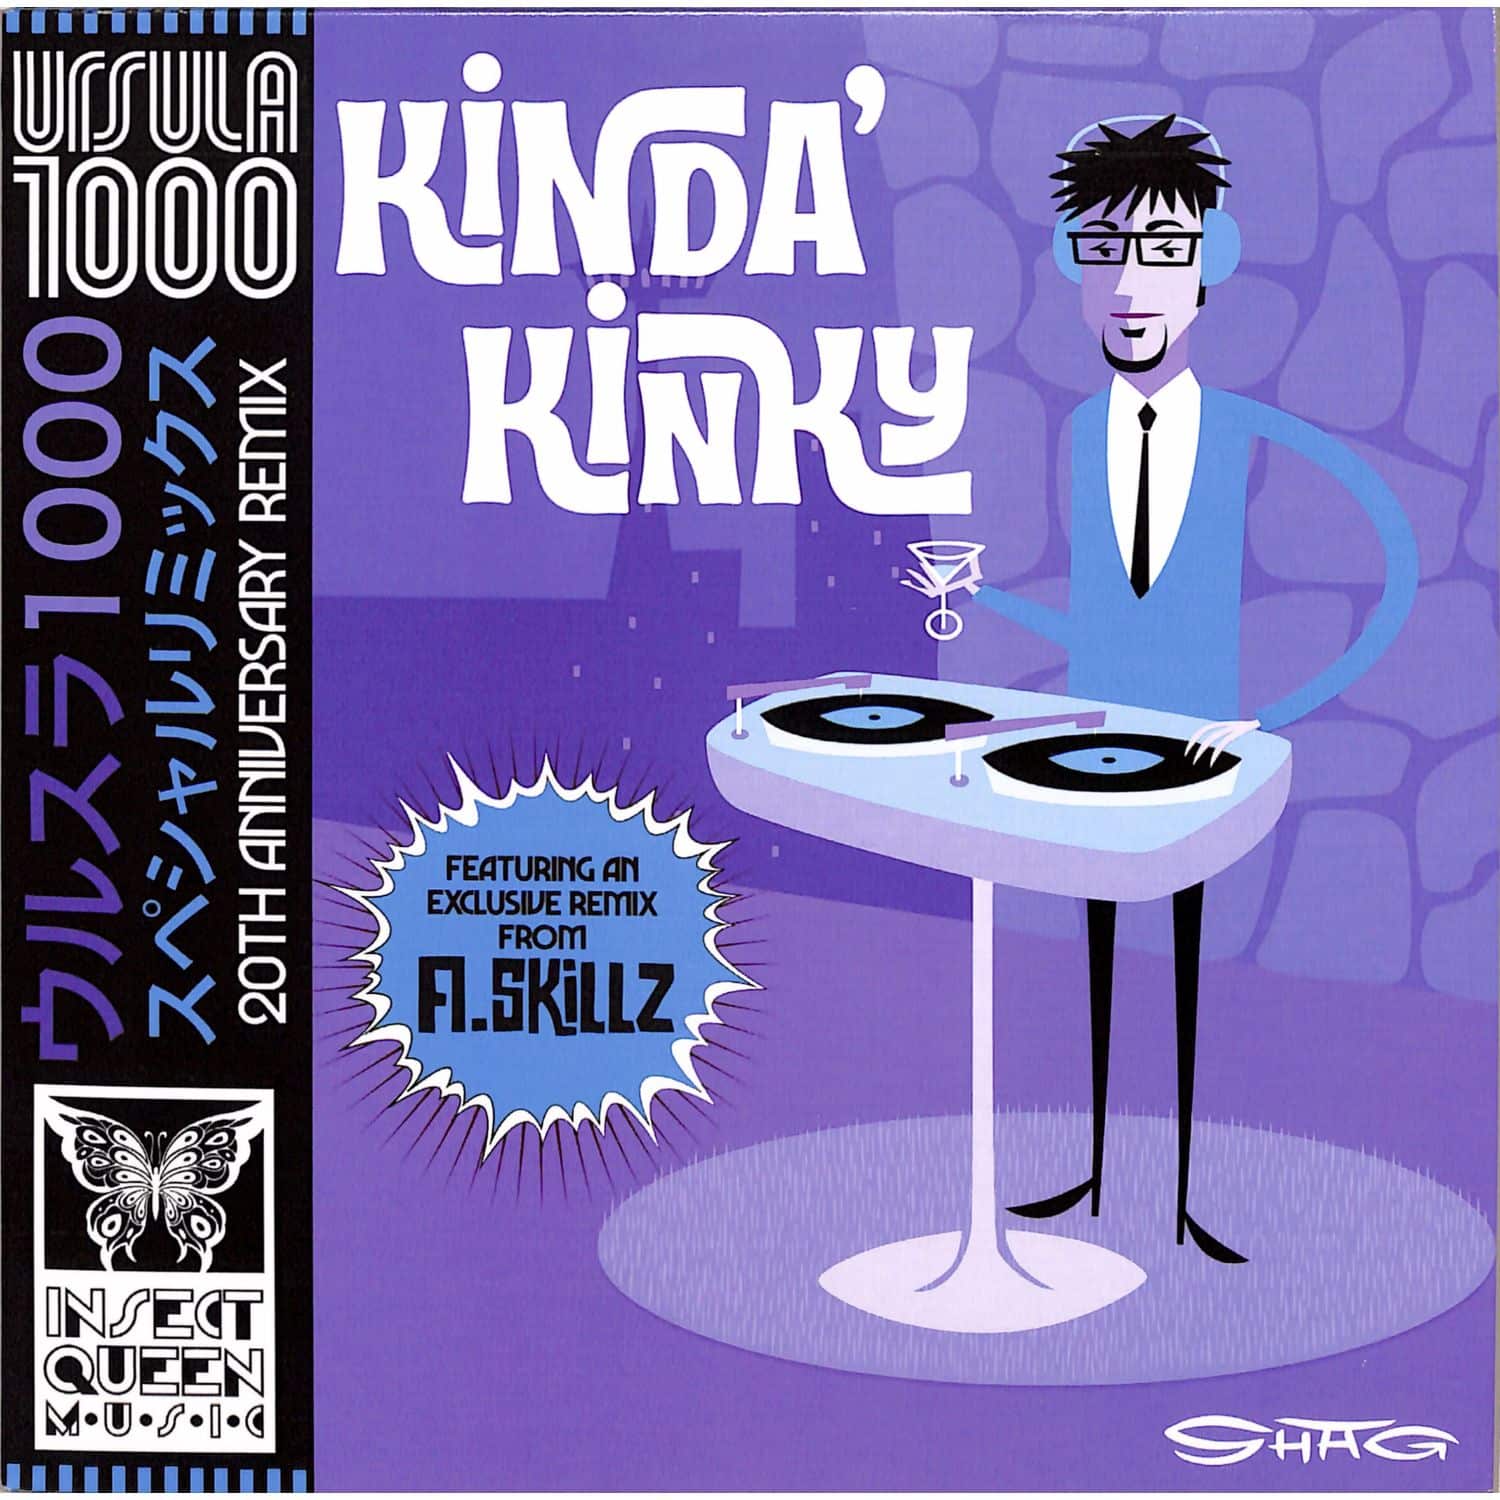 Ursula 1000 - KINDA KINKY 